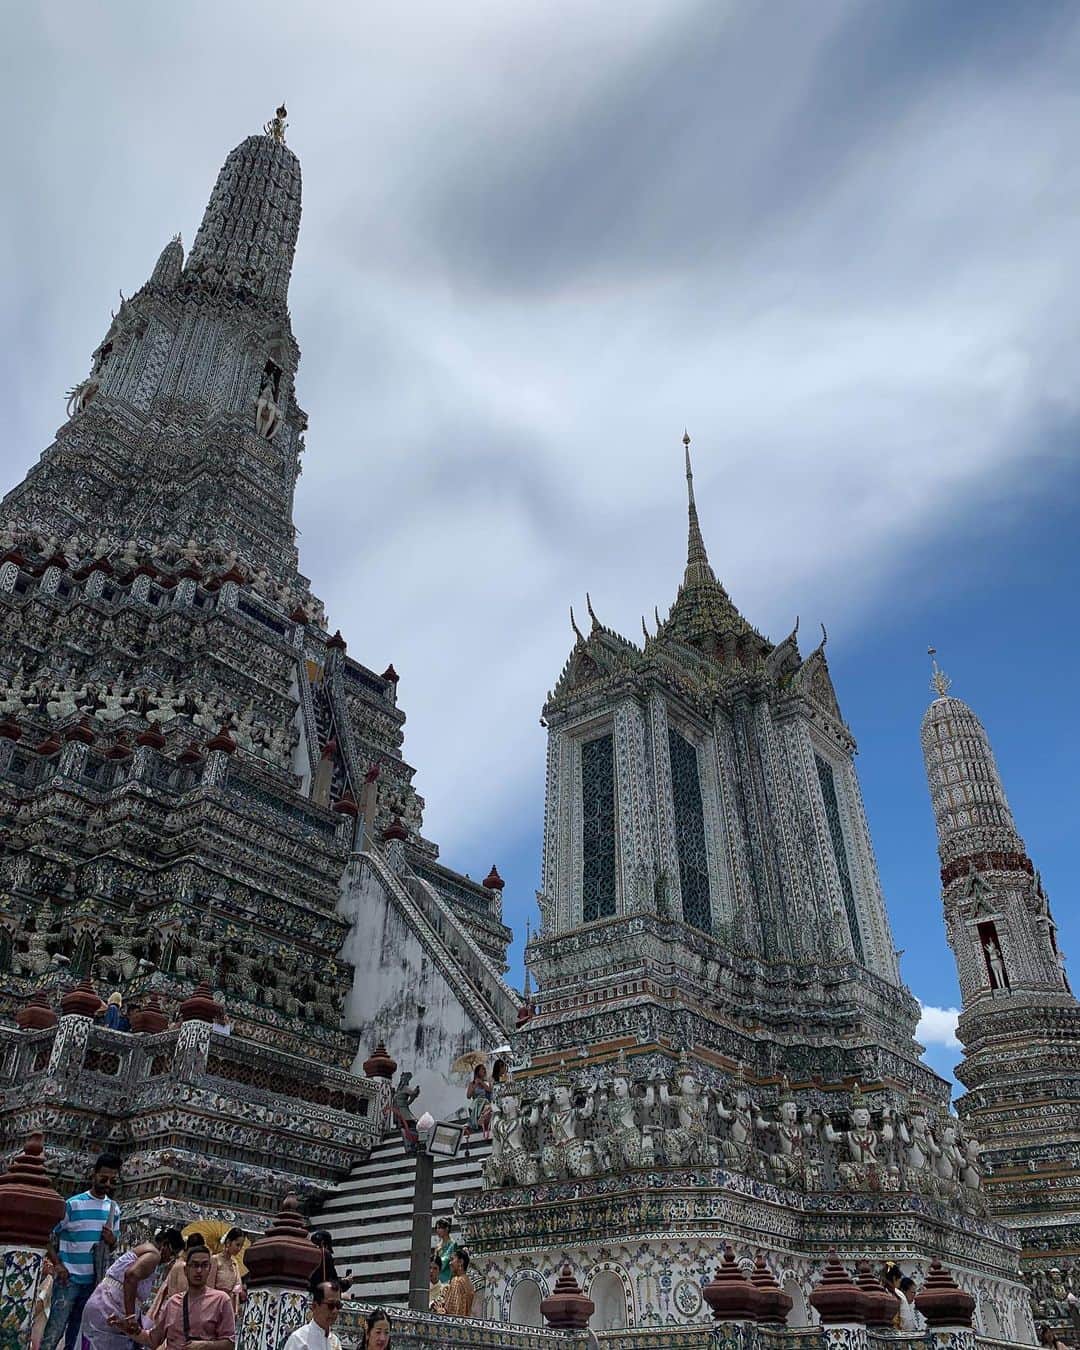 職人.comさんのインスタグラム写真 - (職人.comInstagram)「【ワット・アルンと名物アイス】  夏の終わりに、タイの首都バンコクへ初めて行ってきました。一般的に6月～10月のタイは雨季といわれていますが、滞在中はラッキーなことにほとんど晴れていました。国民の約95%が仏教徒である仏教国タイにはさまざまな寺院があり、黄金に輝くきらびやかな寺院や像、装飾などを街のあちこちで目にします。その中で、バンコク三大寺院の一つであるワット・アルンは少し雰囲気が異なっていて、タイについて下調べをしていたときからここは実際に訪れて自分の目で見てみたいと思っていました。  「ワット・アルン」（正式名称：ワット・アルン・ラーチャワララーム）は、アユタヤ時代に建立されたバンコクのチャオプラヤー川沿いにある仏教寺院。ワット・アルンとは「暁の寺」という意味で、三島由紀夫が書いた小説のタイトルにもなっています。タイの硬貨、10バーツにも描かれ、世界中から訪れる観光客、そしてタイ国民から愛され続けている寺院です。朝、昼、夜でまったく違う表情を見せてくれるのもワット・アルンの魅力で、その名のとおり、朝焼けに染まる姿や夕日を背にしたシルエットはとても美しく、日中は日の光を反射して輝き、夜にはライトアップされます。  ワット・アルンへの行き方は、対岸のターティアン船着場から渡し船で向かう方法がポピュラーです。日本円にして数十円程度で、ワット・アルンをはじめとしたタイの景色を楽しみながらチャオプラヤー川を渡ることができます。  船から降りて目の前にそびえ立つのは、この色とりどりの5基の仏塔。大仏塔の高さは75メートル、台座の周囲は234メートルもあり、ヒンドゥー教の聖地カイサーラ山をかたどっているといわれています。仏塔の表面には無数の陶片が埋め込まれており、遠くから眺めていた印象とはまた違った美しさ。実際に仏塔の上に登って間近で見て回ることができるため、ぜひ一周して一つ一つの模様や形、配置、色を見比べてみてほしいのですが、階段が非常に急なのです。タイの民族衣装を着て写真撮影をしている観光客を多く見かけたのですが、あの衣装でこの階段を上り下りするガッツは尊敬に値します。階段では転がり落ちないよう、くれぐれもお気をつけください。それも含めて、探検気分を楽しめてエキサイティングな体験でした。  ワット・アルンを歩き回り一汗かいたあとは、敷地内にある「アルン・カフェ」という売店のような小さなカフェへ。こちらには、ワット・アルンの装飾タイルを模したアイスが売られています。このかわいい見た目を侮るなかれ、実際に頼んでアイスを目の前にした時、模様の緻密さや凹凸、周りを囲む4つの花がすべて異なっているデザイン性の高さなどに驚きました。アイスなのに美術品のよう。眼福です。もったいないですが、溶ける前に食べなければいけません。味は、オレンジのタイティーと青のバタフライピーの2種類。どちらもタイで愛されているお茶で、味からもしっかりとタイを感じられるのも嬉しいところ。アイスや飲み物を片手に、ベンチに腰掛けてゆっくりする人々でカフェの周りはにぎわっていました。このアイスは今年の5月から販売開始したようなのですが、こうして歴史的建造物の模様やイメージなどをデザインに落とし込み、更に多くの人に興味を持ってもらうきっかけにするというのは、この先その場所を残していくうえでとても良い方法だと感じました。  帰国して写真を見返していて、綺麗だった、行って良かったと改めて思うお寺だったため、タイに行かれる際はぜひおすすめしたい場所です。  ワット・アルン（暁の寺） https://goo.gl/maps/Z9fUn5pwP9iTDgXb6 アルン・カフェ https://goo.gl/maps/dJ1ERjfiFd3p5UxE6  参考資料 https://www.thailandtravel.or.jp/wat-arun/ https://www.arukikata.co.jp/web/article/item/2210744/ https://www.bangkoknavi.com/miru/40/ https://www.tokyo-np.co.jp/article/265121  @shokunincom  #職人ドットコム #京都市 #上京区 #中京区 #西陣 #キッチン用品 #調理道具 #調理器具 #料理道具 #台所道具 #手仕事 #暮らしの道具 #暮らしを楽しむ #工芸品 #民芸 #民藝 #器のある暮らし #焼き物 #生活工芸 #ワットアルン #ワットアルンラーチャワララーム #名物アイス #眼福 #暁の寺 #アルンカフェ #仏塔 #タイ観光 #バンコク #タイ名所 #タイのお寺」9月27日 14時52分 - shokunincom